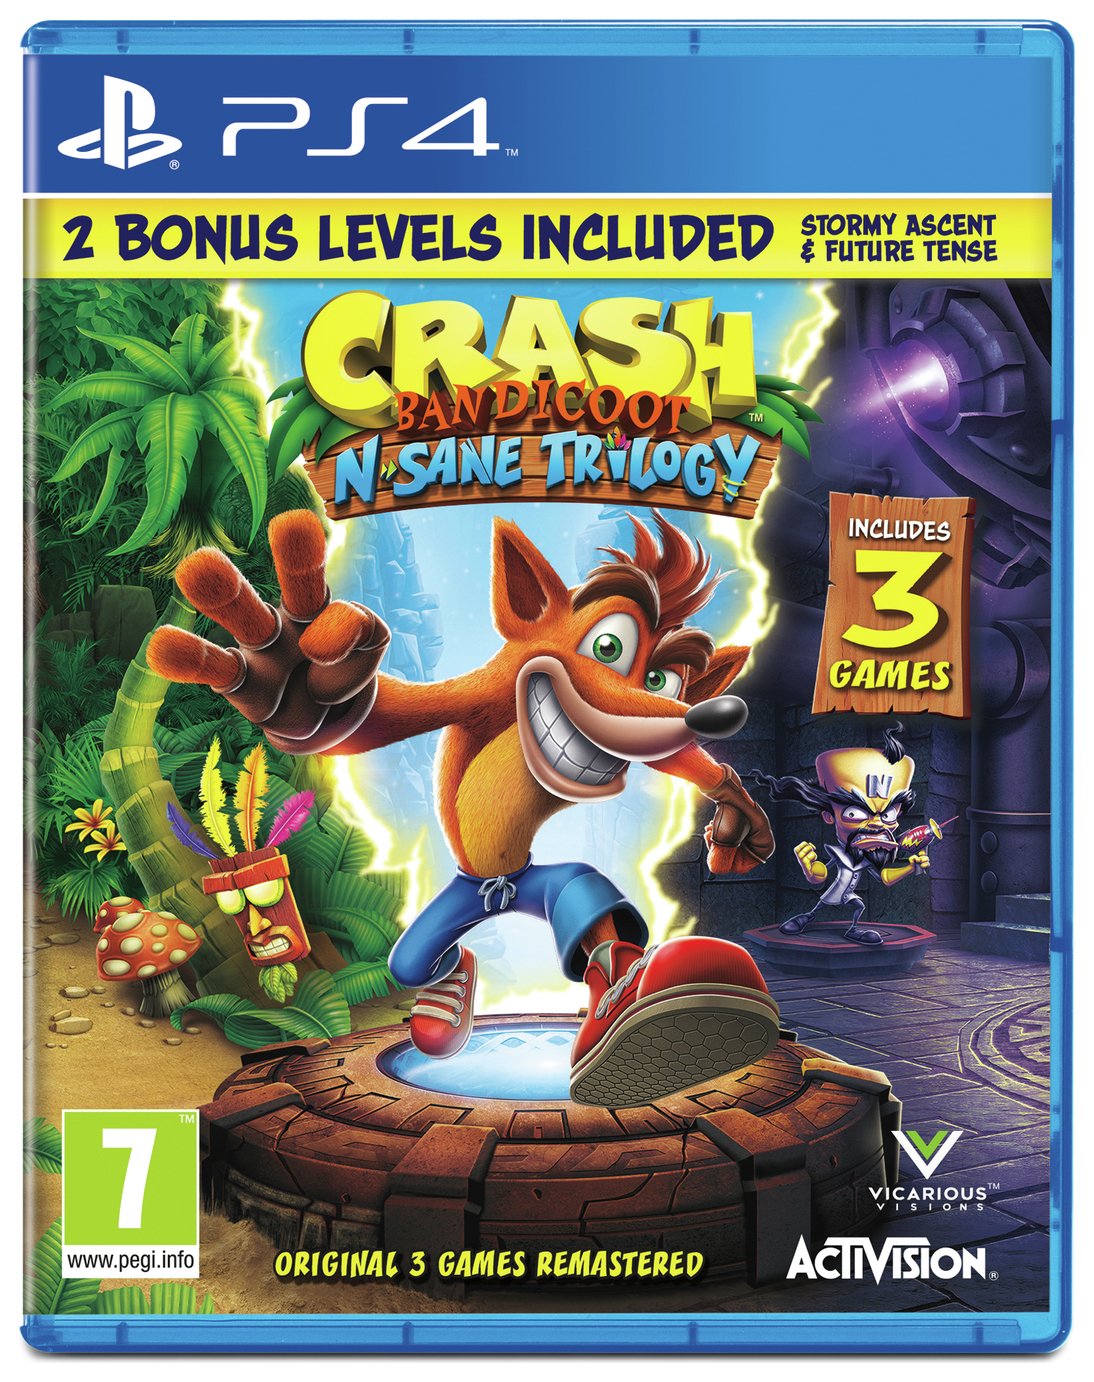 Crash Bandicoot N.Sane Trilogy PS4 Game